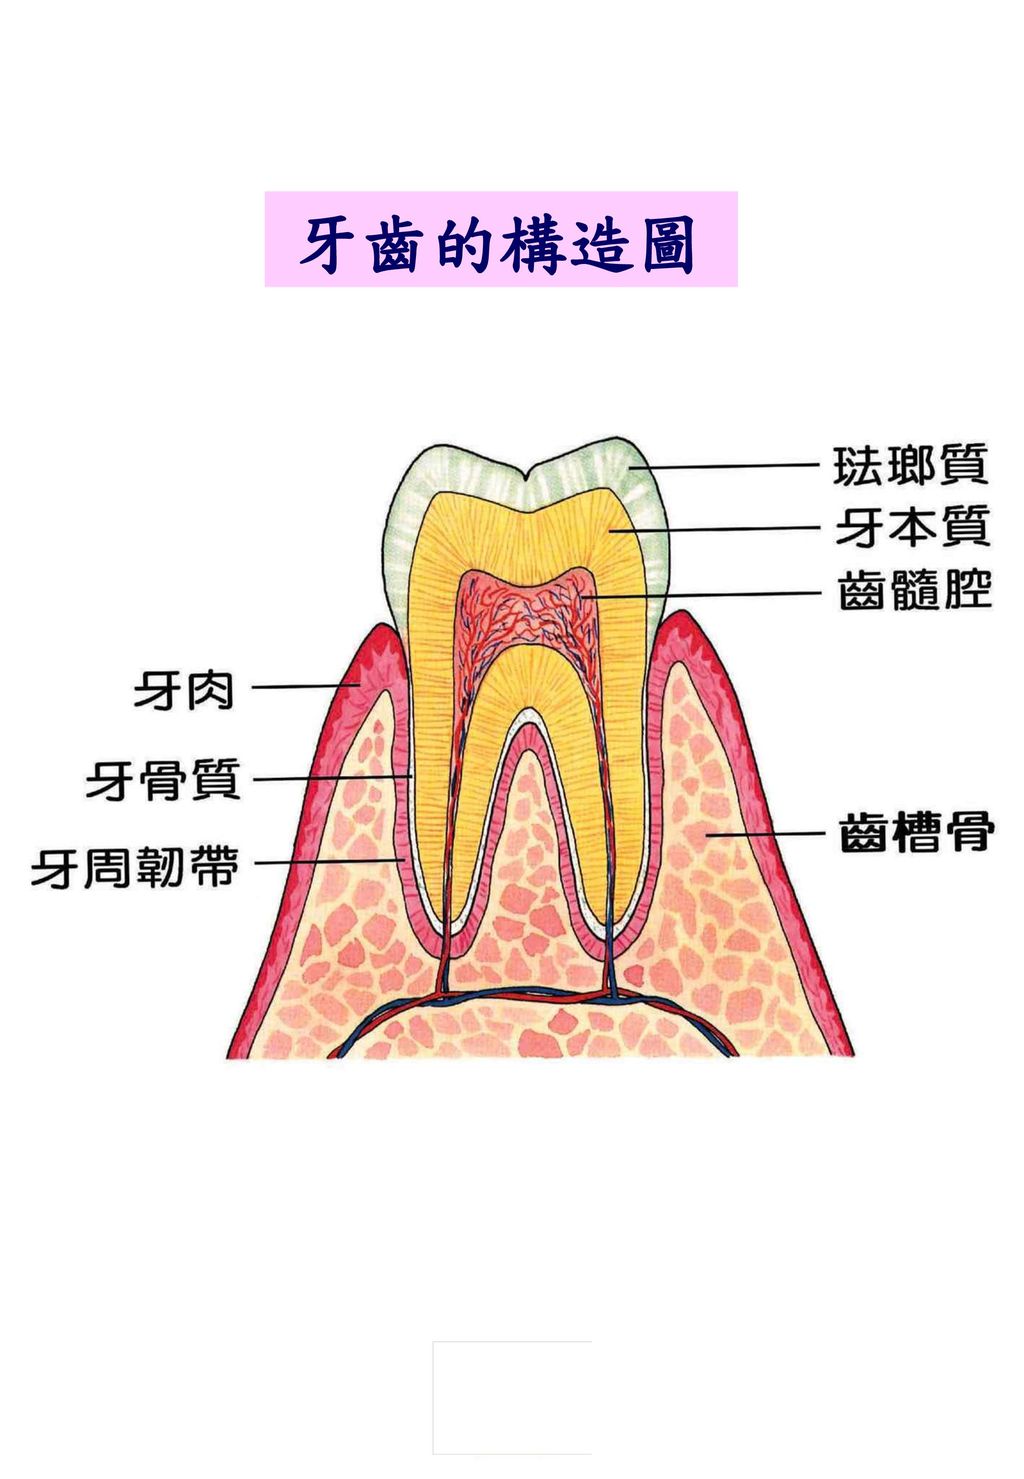 牙齒的構造圖